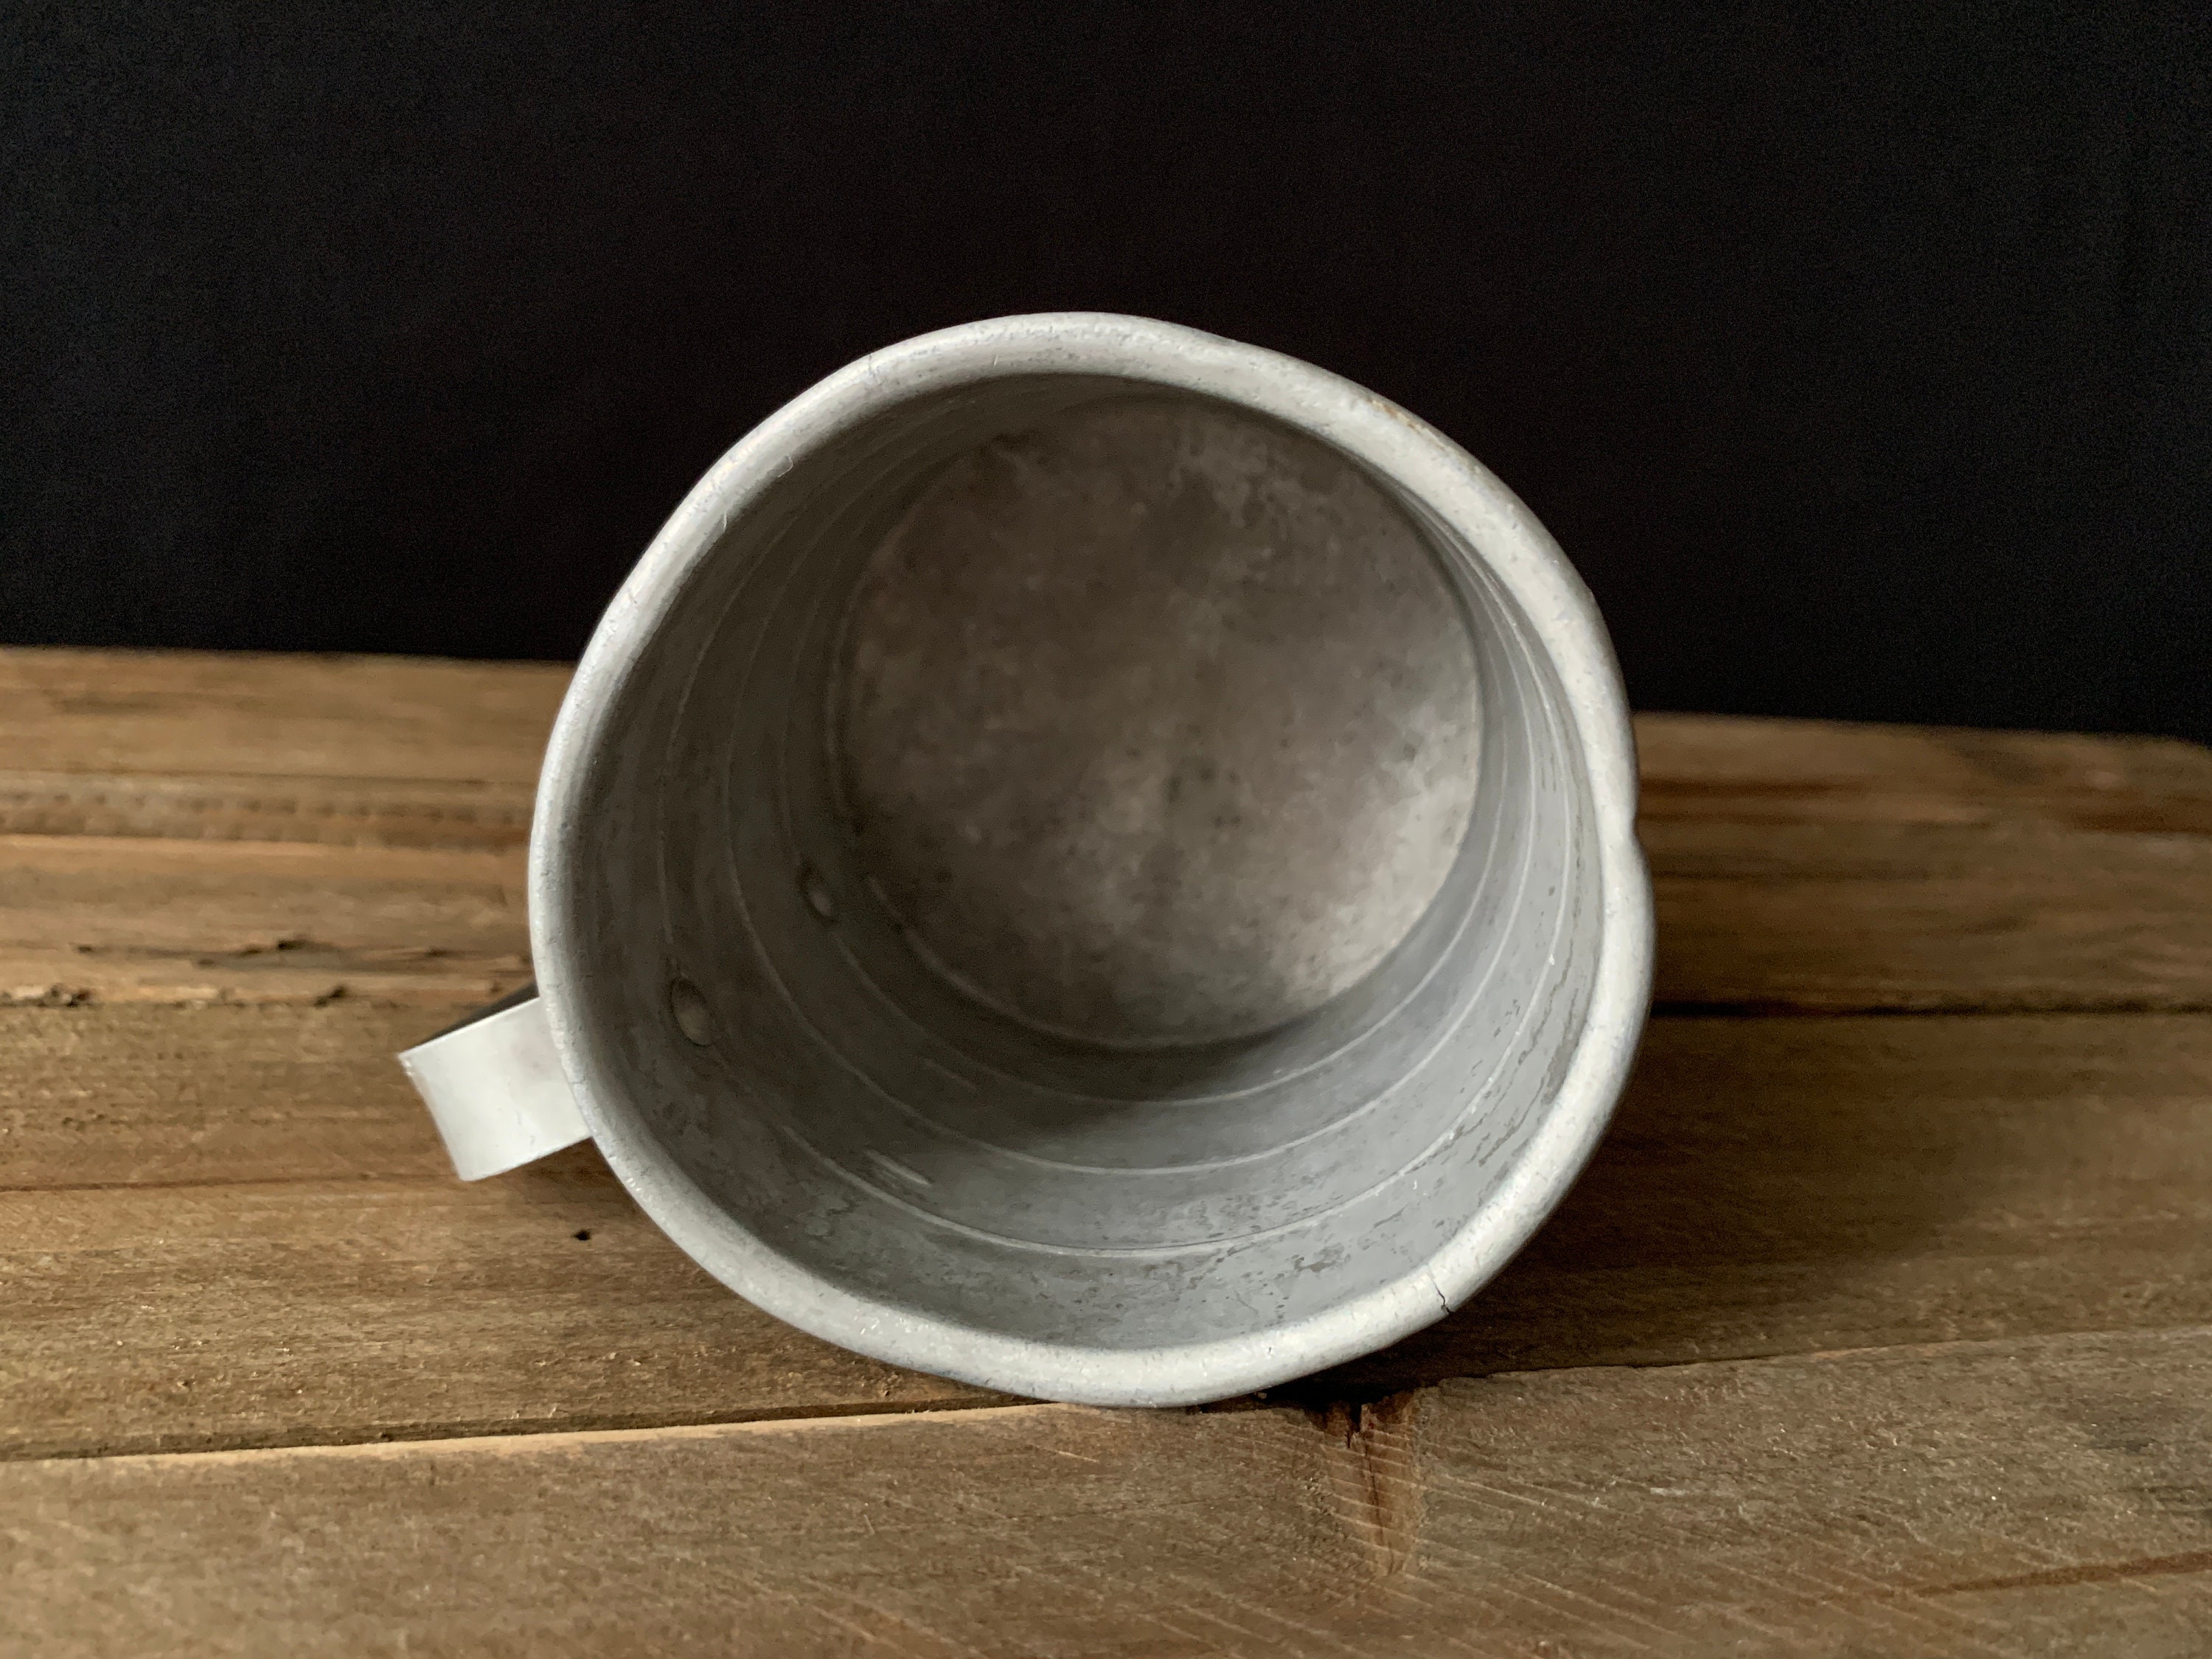 Vintage Primitive aluminum 1 cup measuring Cup